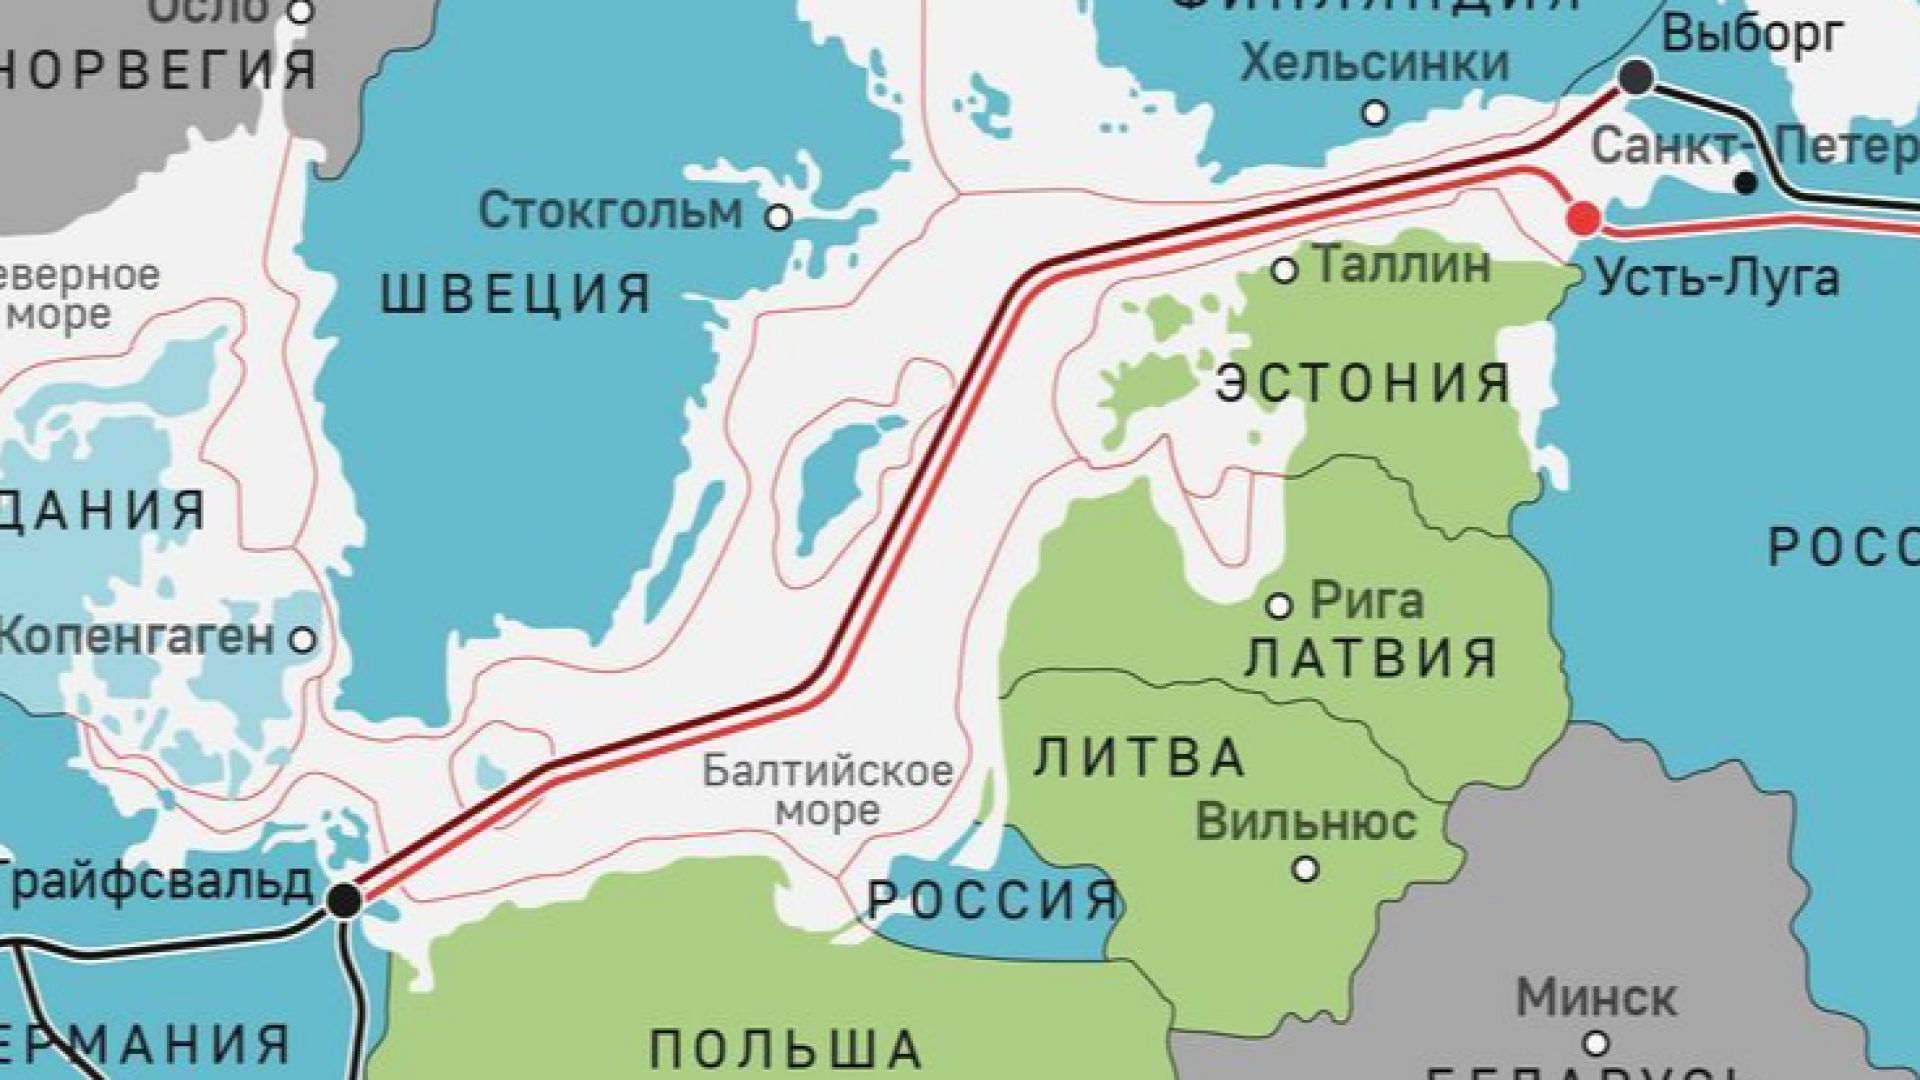 Схема трубопровода Северный поток 2